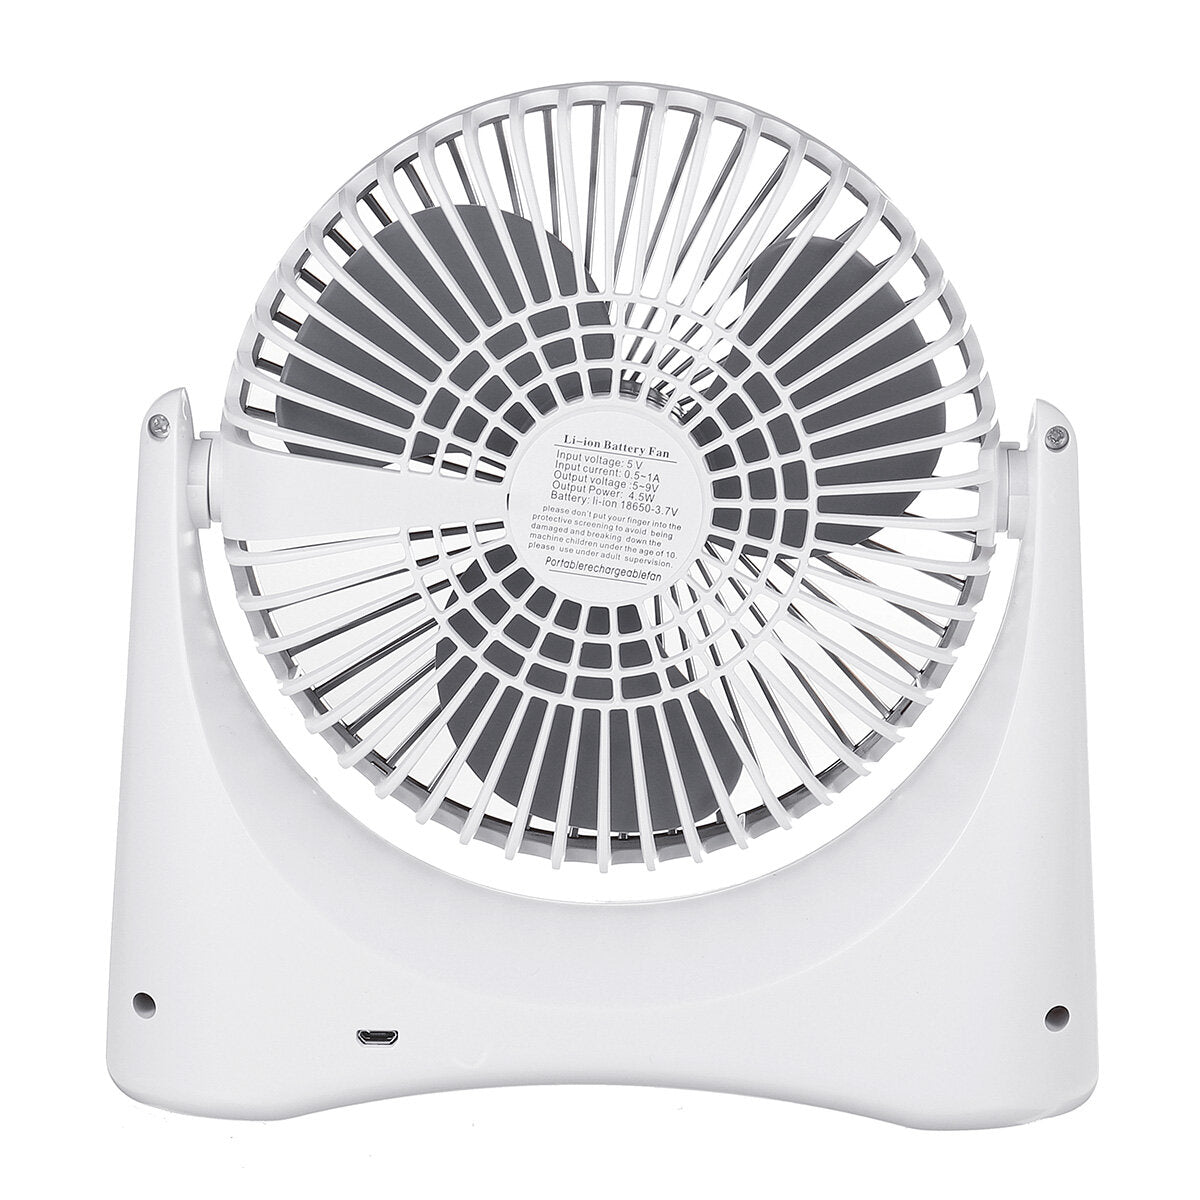 Summer Fan Rechargeable Low Noise 3 Gear Adjustment Desk Mini Fan Electric Cooling Fan